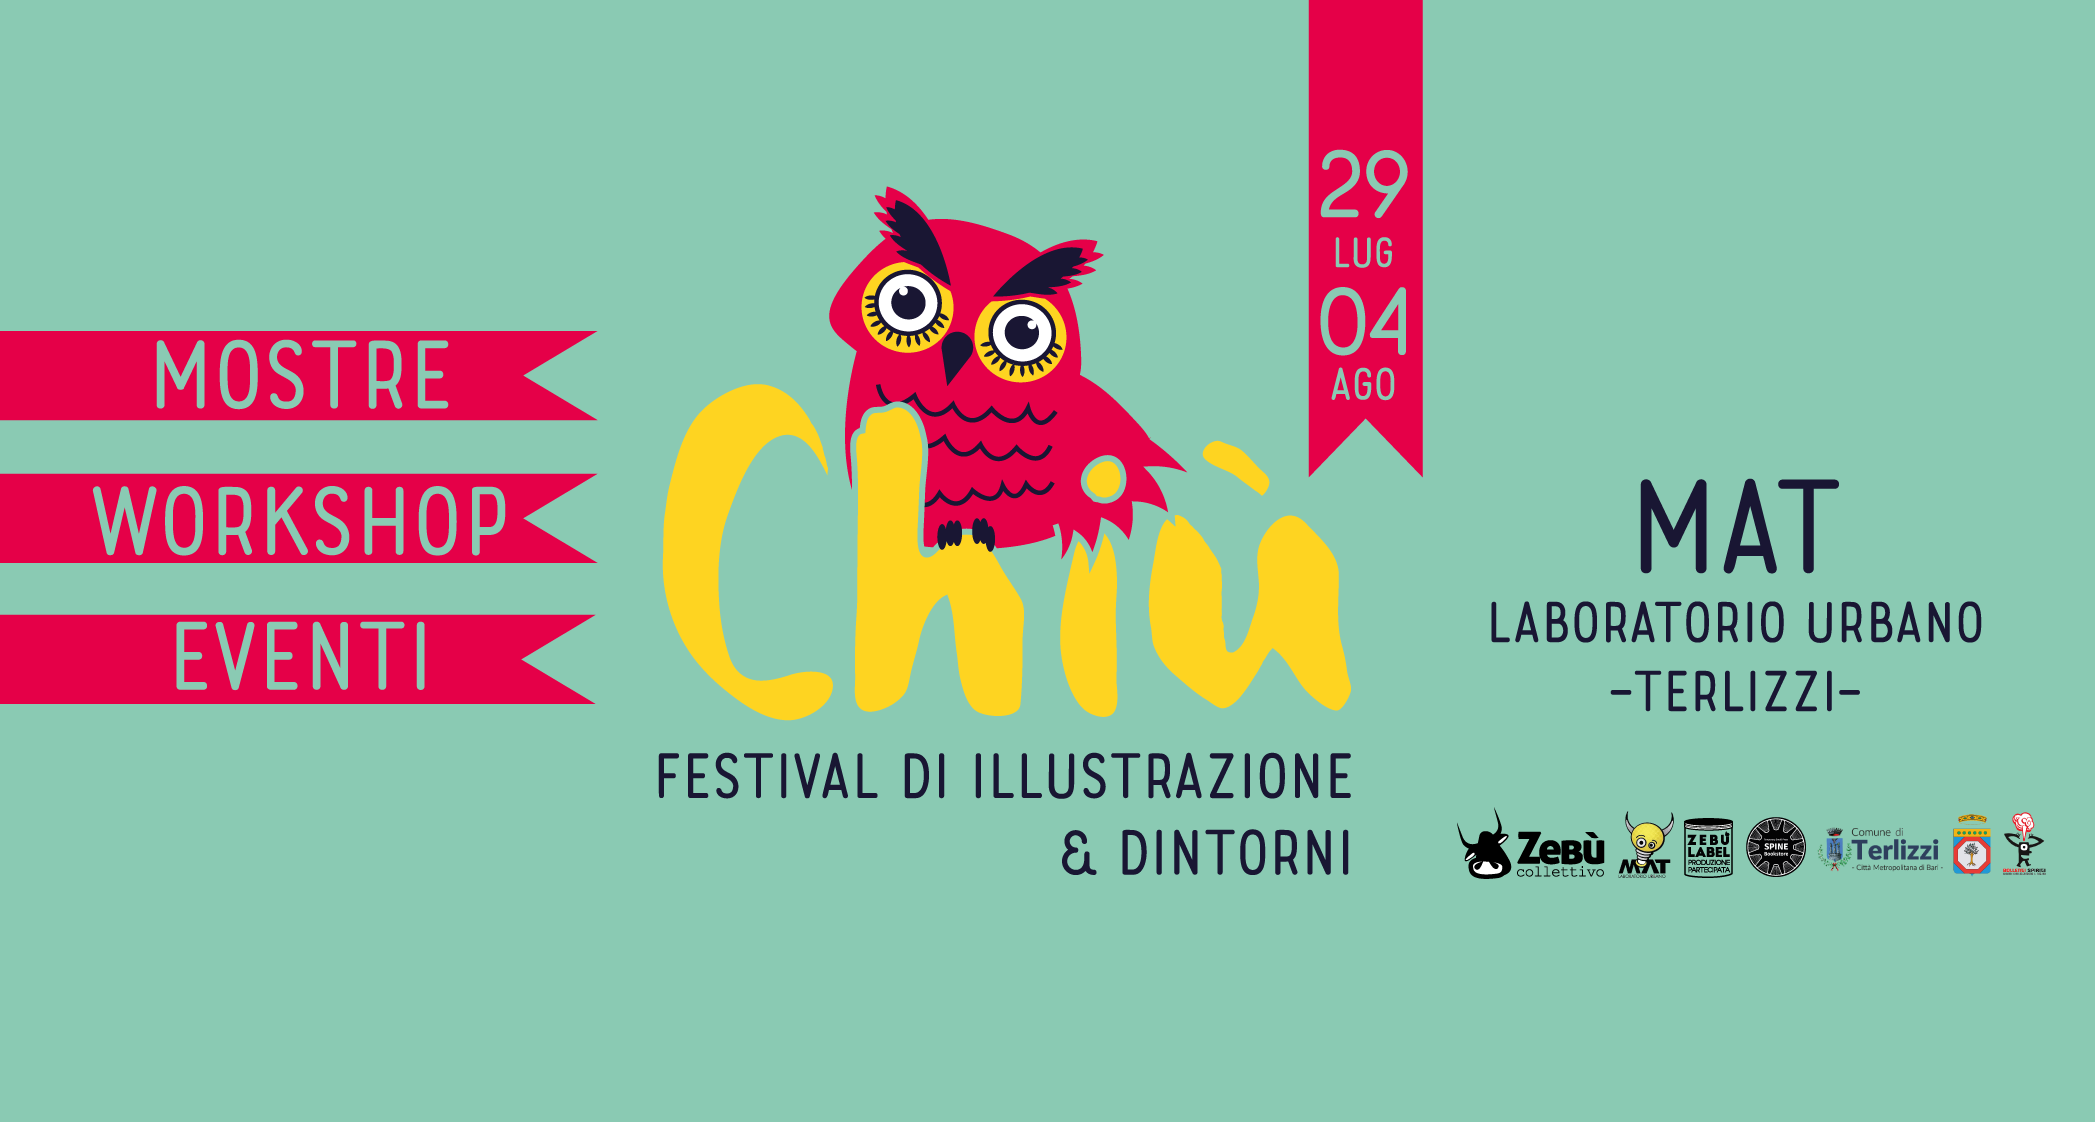 Terlizzi, dal 29 luglio al 4 agosto la terza edizione del CHIU': festival ... - Il Quotidiano Italiano - Bari